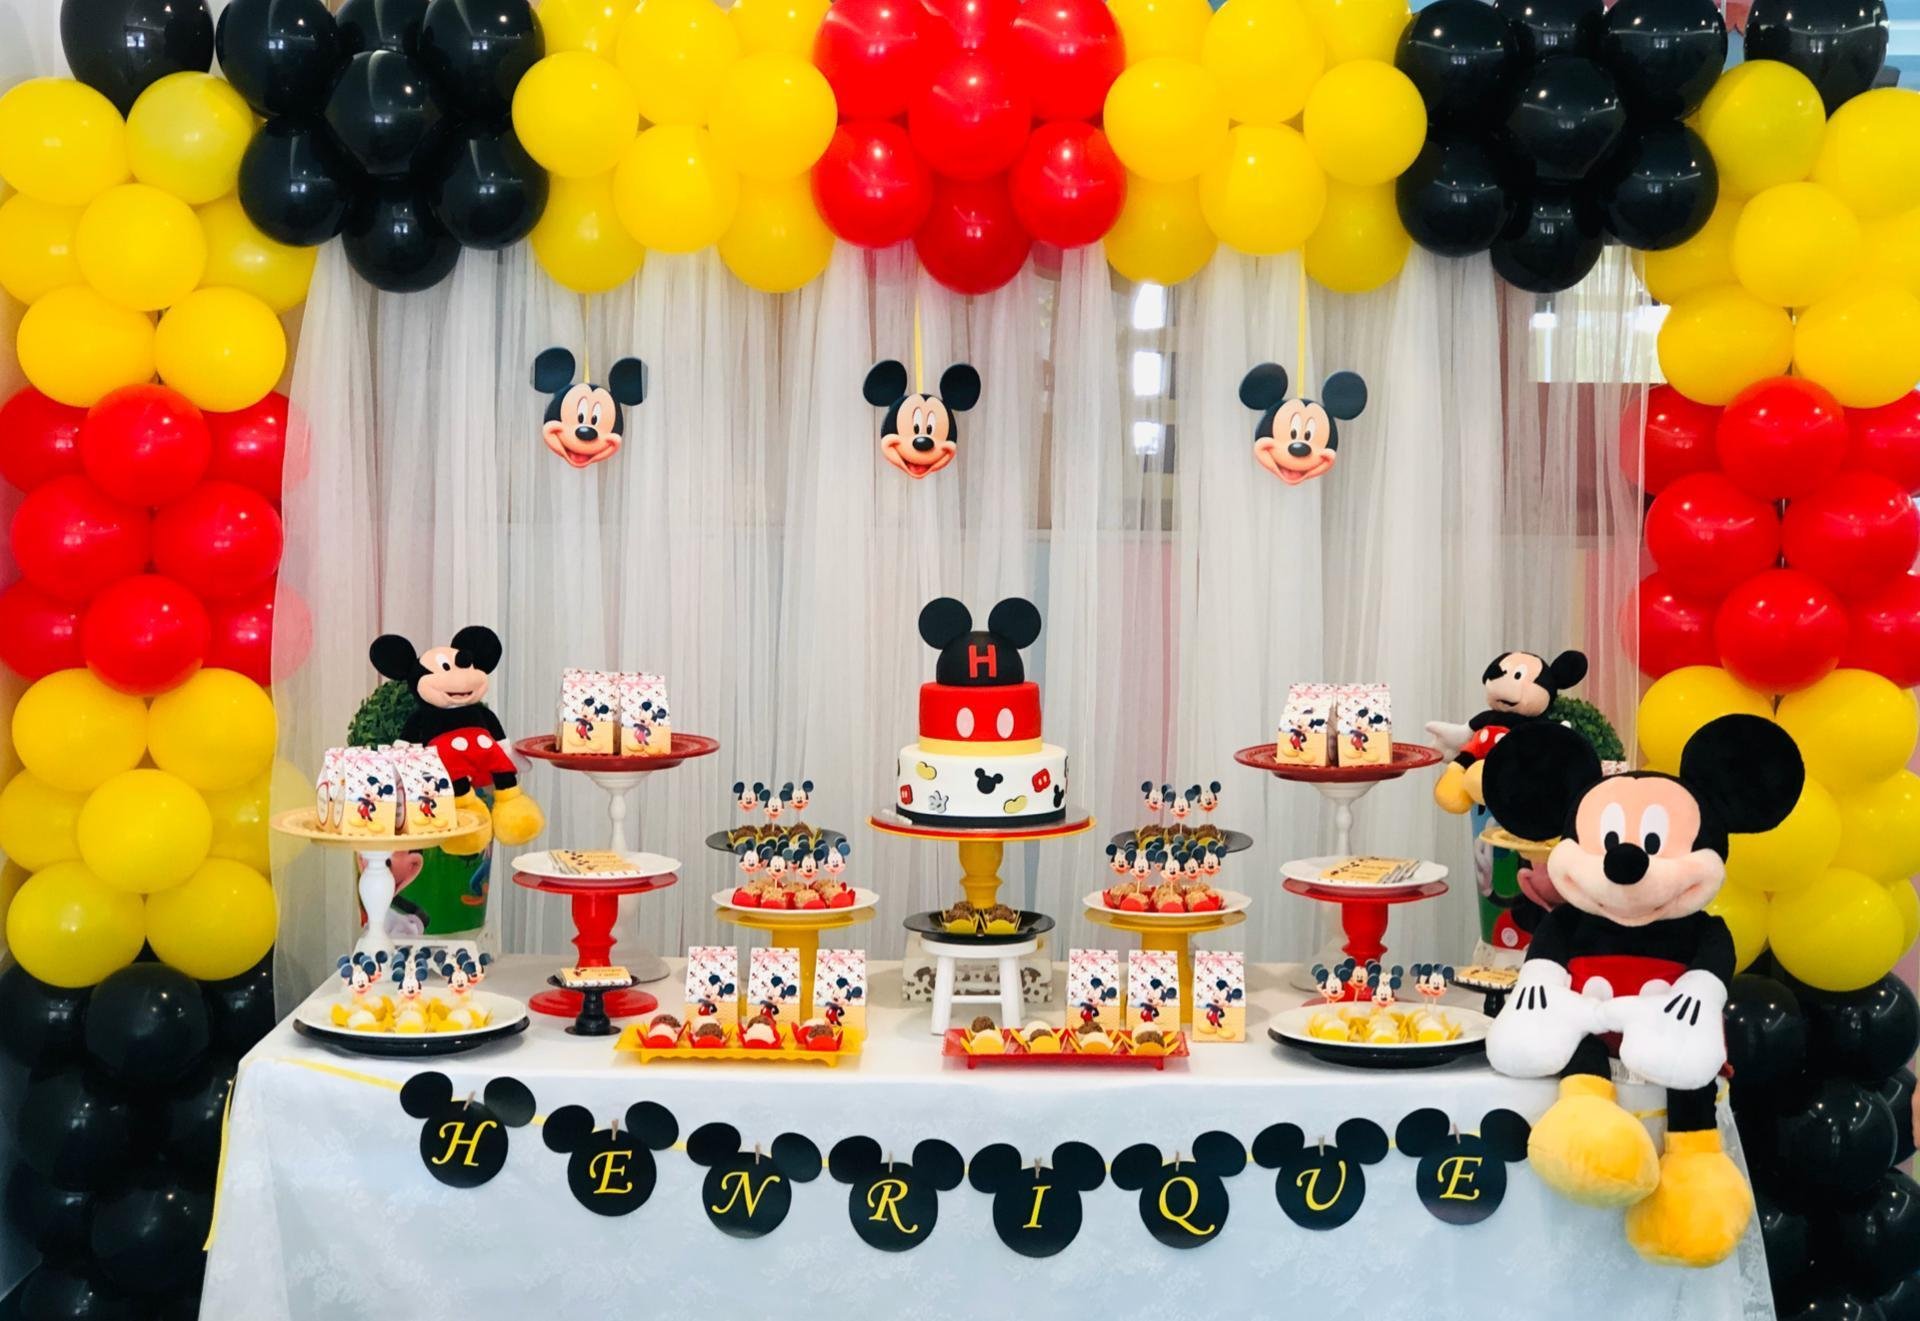 Decoração de festa infantil tema Mickey Mouse